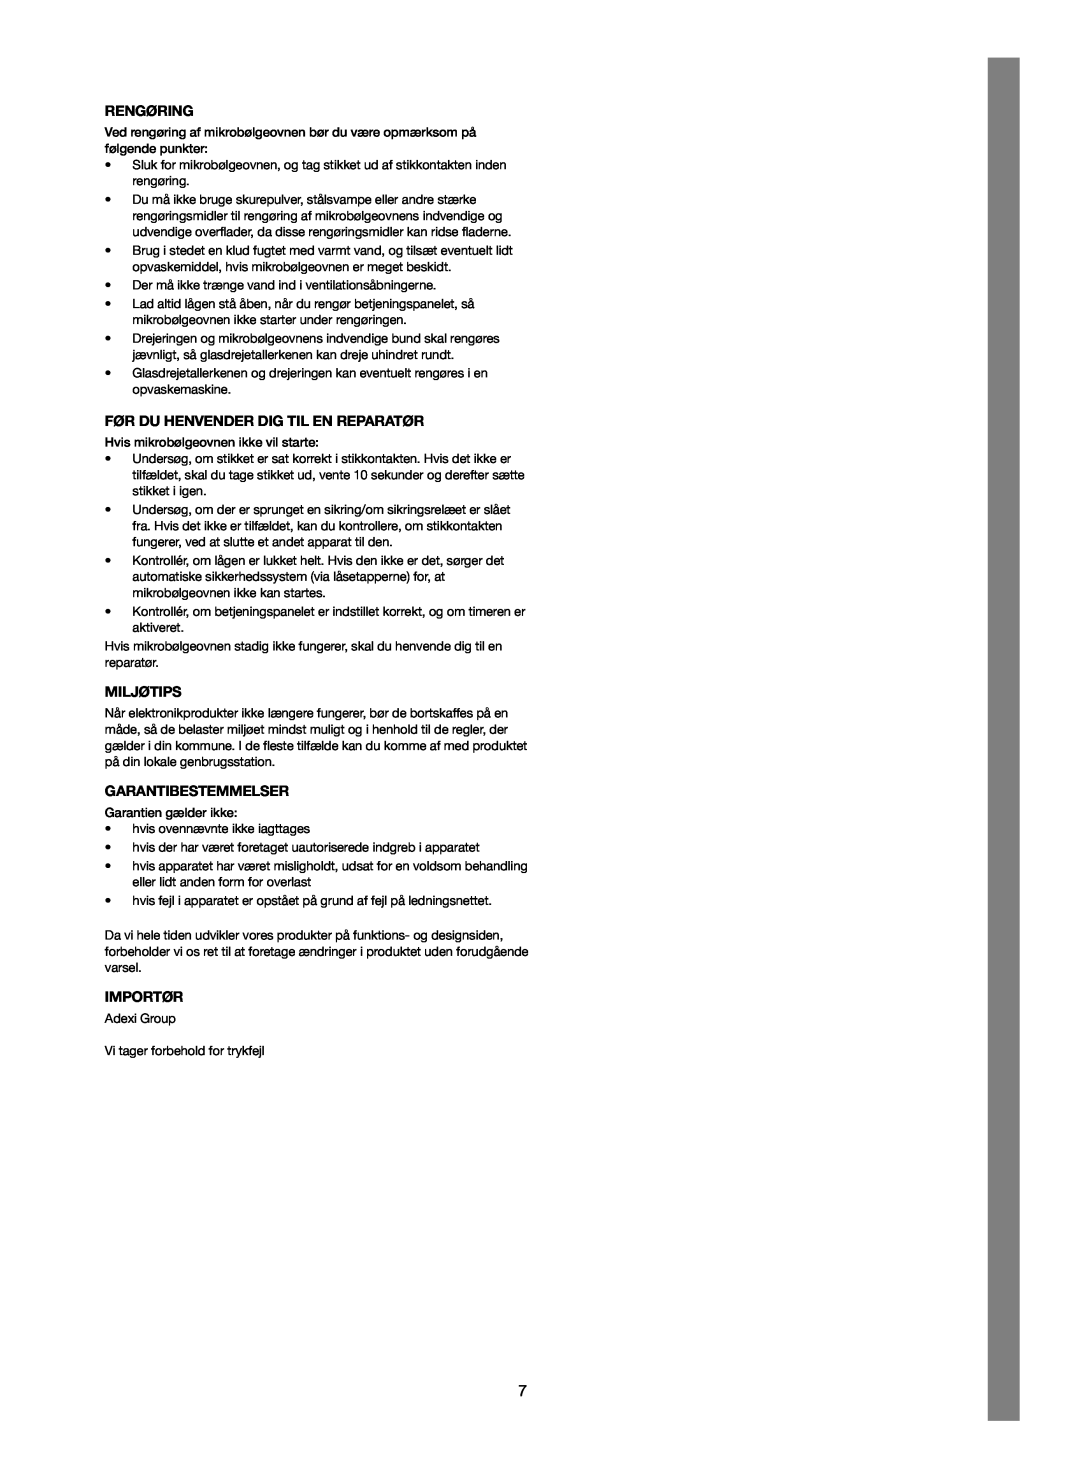 Melissa 753-123 manual Rengøring, Før Du Henvender Dig Til En Reparatør, Miljøtips, Garantibestemmelser, Importør 